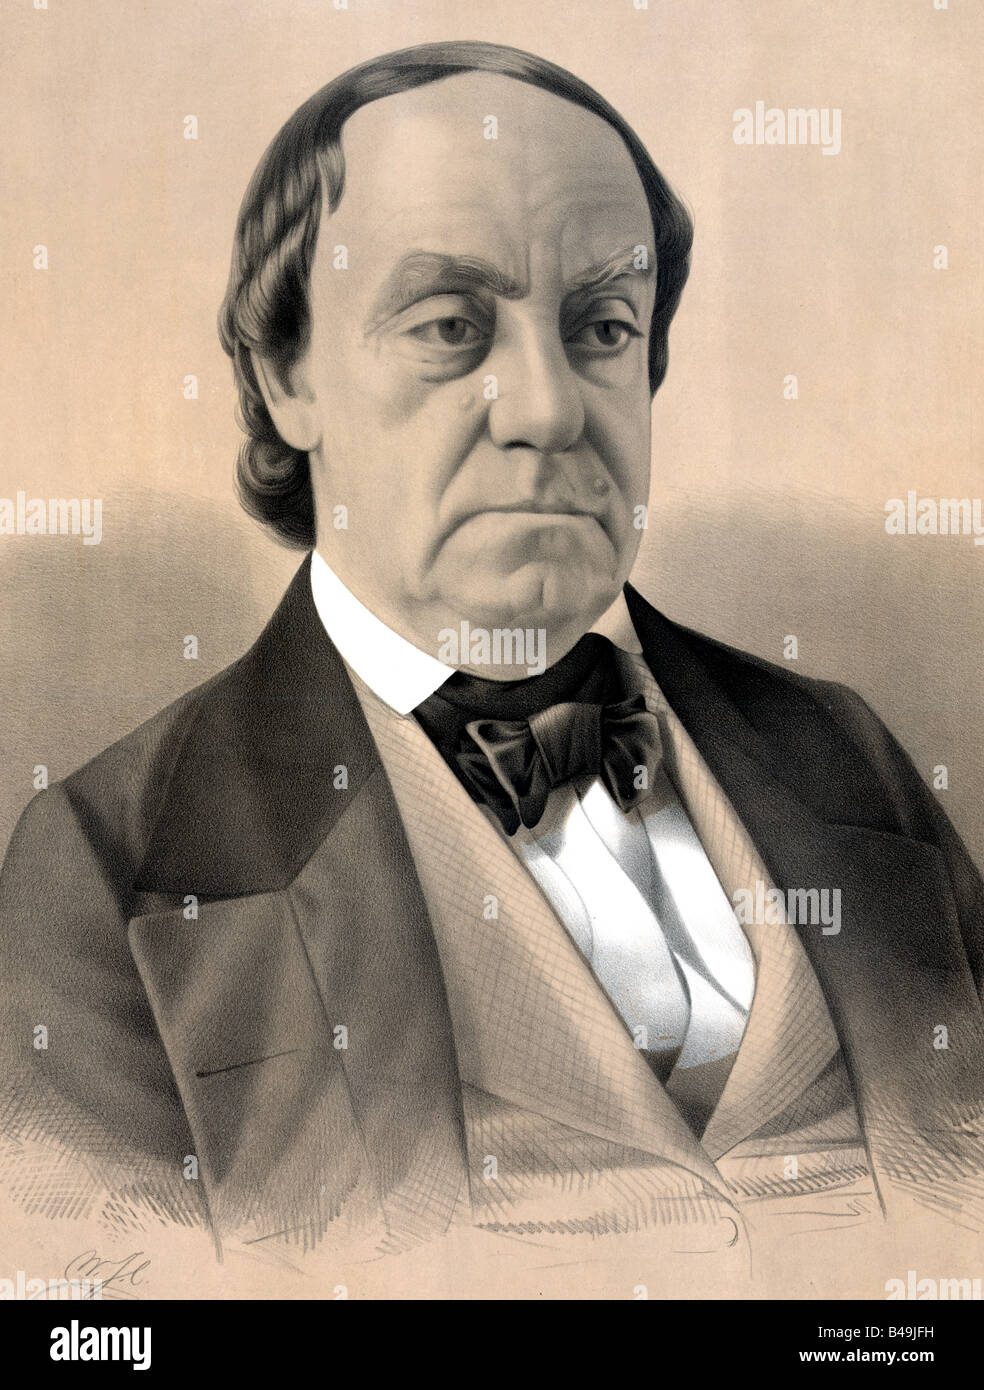 Lewis Cass, US-amerikanischer Offizier und Politiker. Demokratischer Kandidat für das Präsidentenamt der Vereinigten Staaten im Jahr 1848 Stockfoto